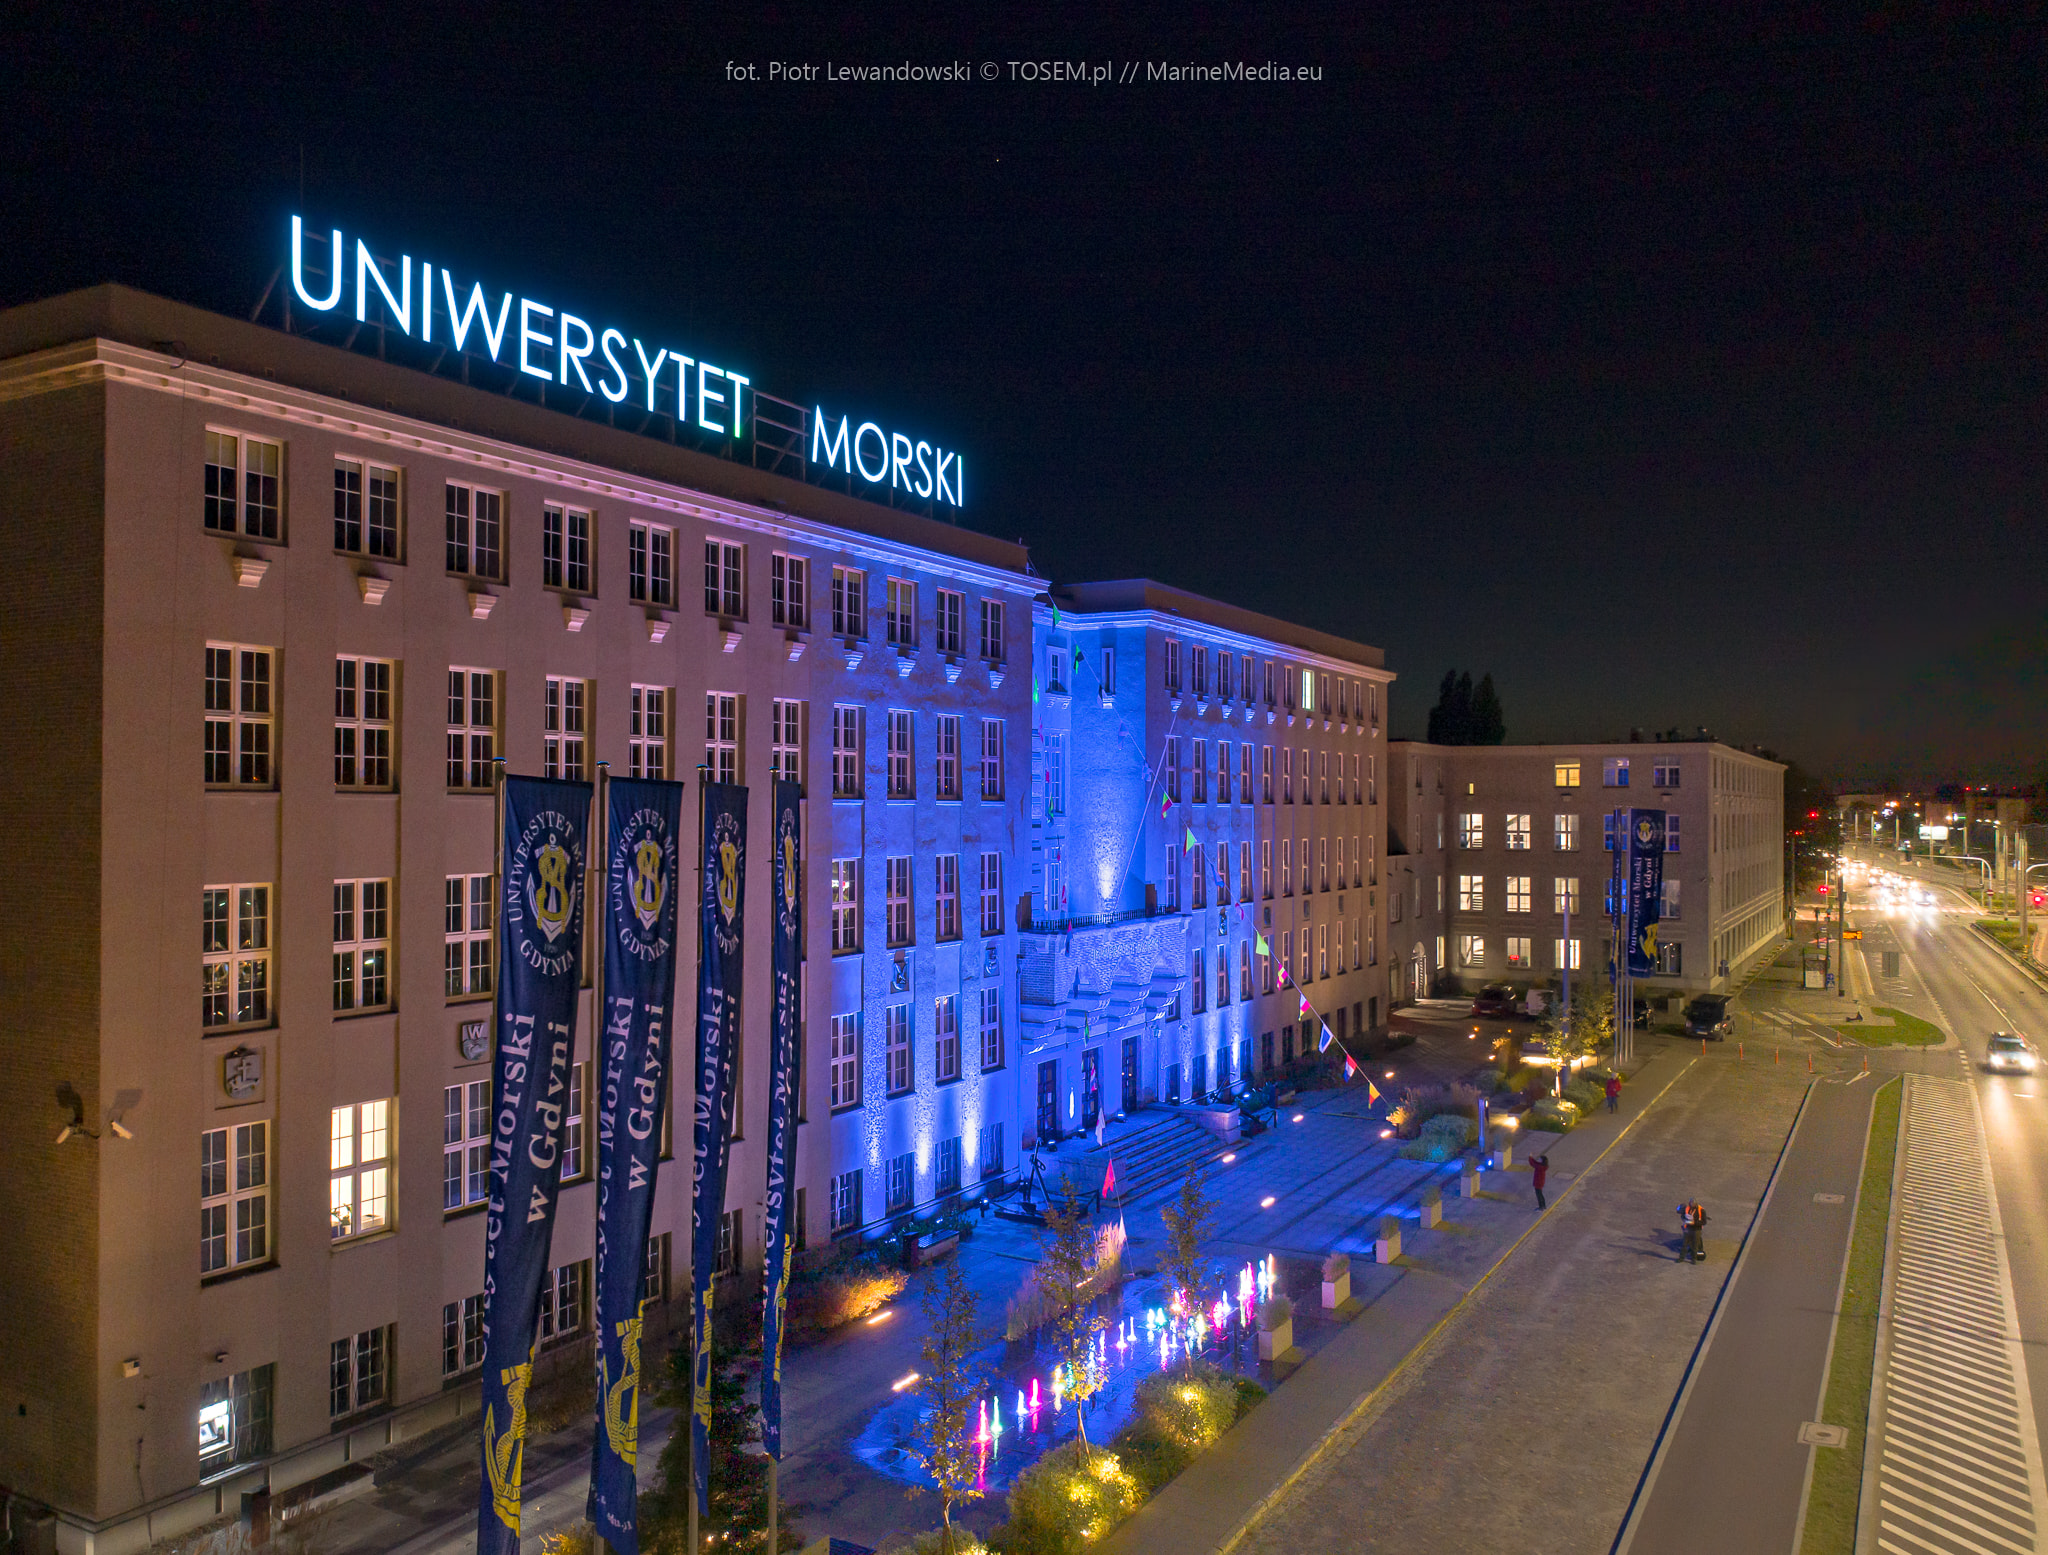 Uniwersytet Morski w Gdyni, fot. Marine Media / z naszej facebookowej grupy Gdynia w obiektywie